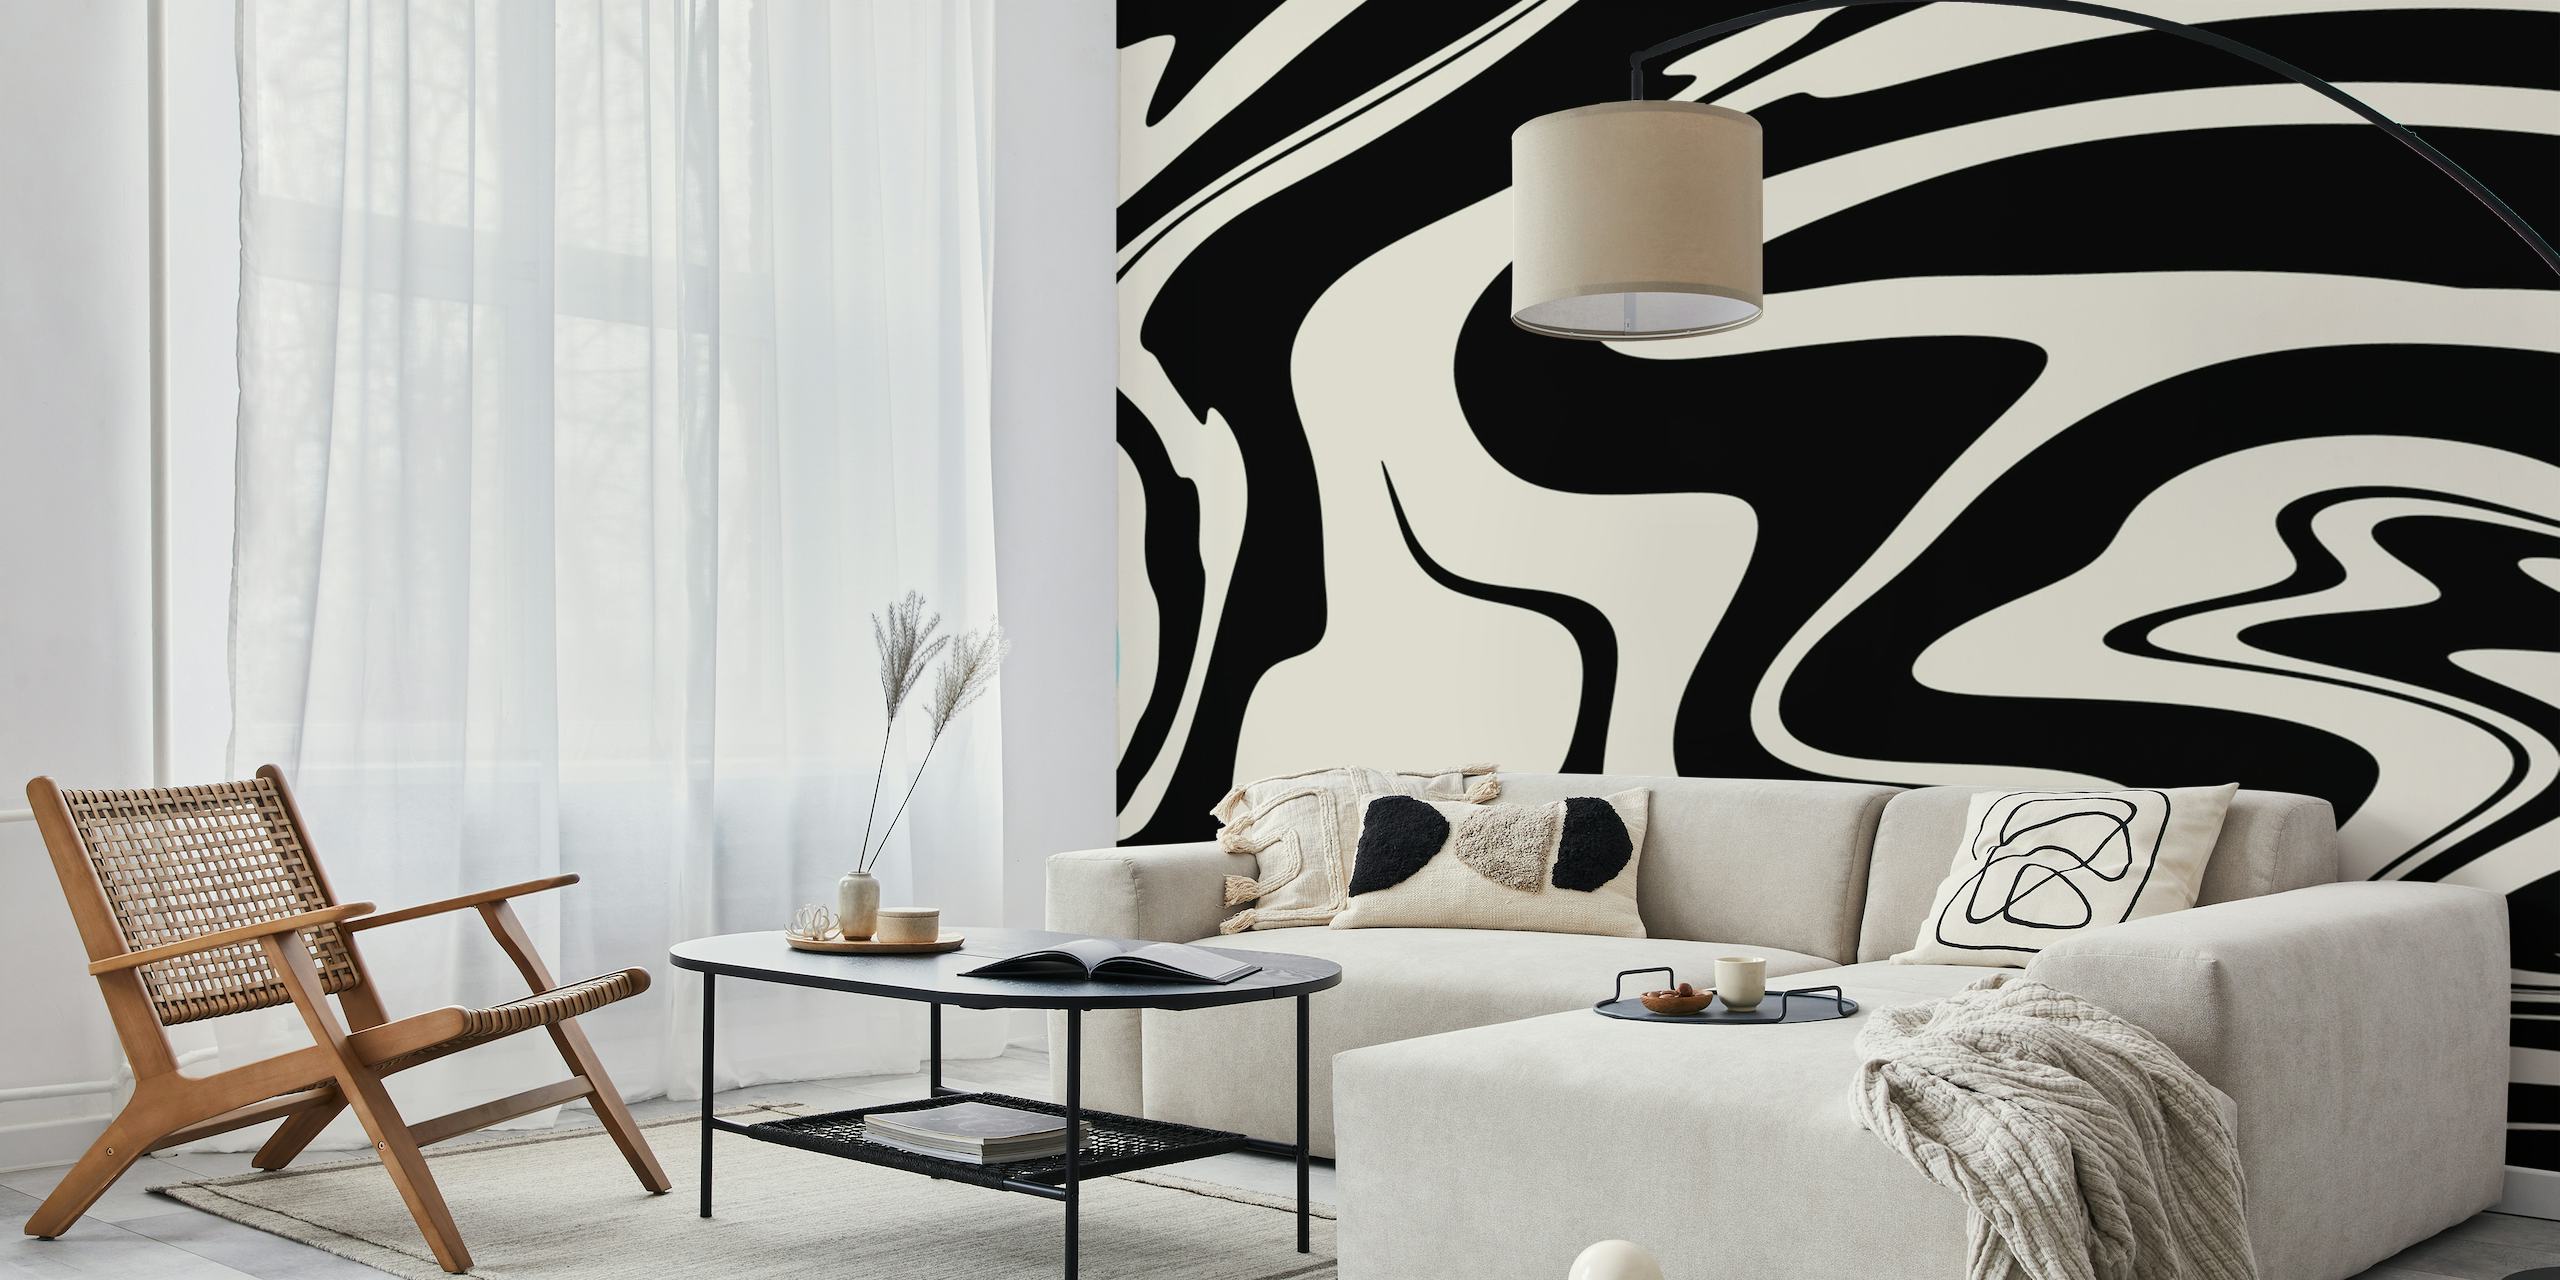 Abstraktes, wirbelndes Schwarz-Weiß-Design, das an den Retro-Glamour-Stil für Wandgemälde erinnert.